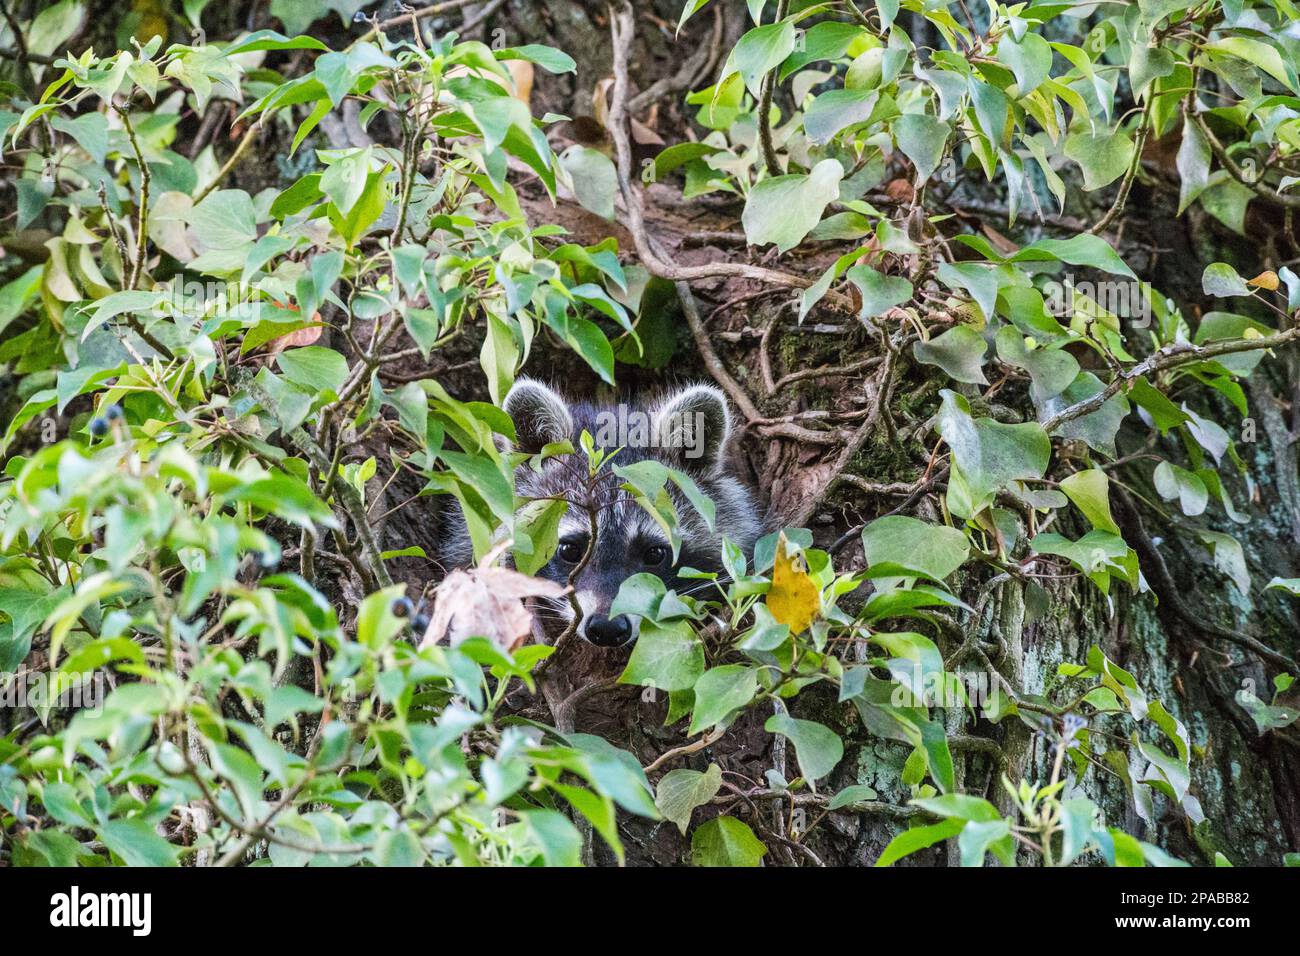 Junge Waschbären schauen aus ihrer Baumhöhle, umrankt von Efeu - Young raccoons look out of their tree hollow, entwined with ivy Stock Photo